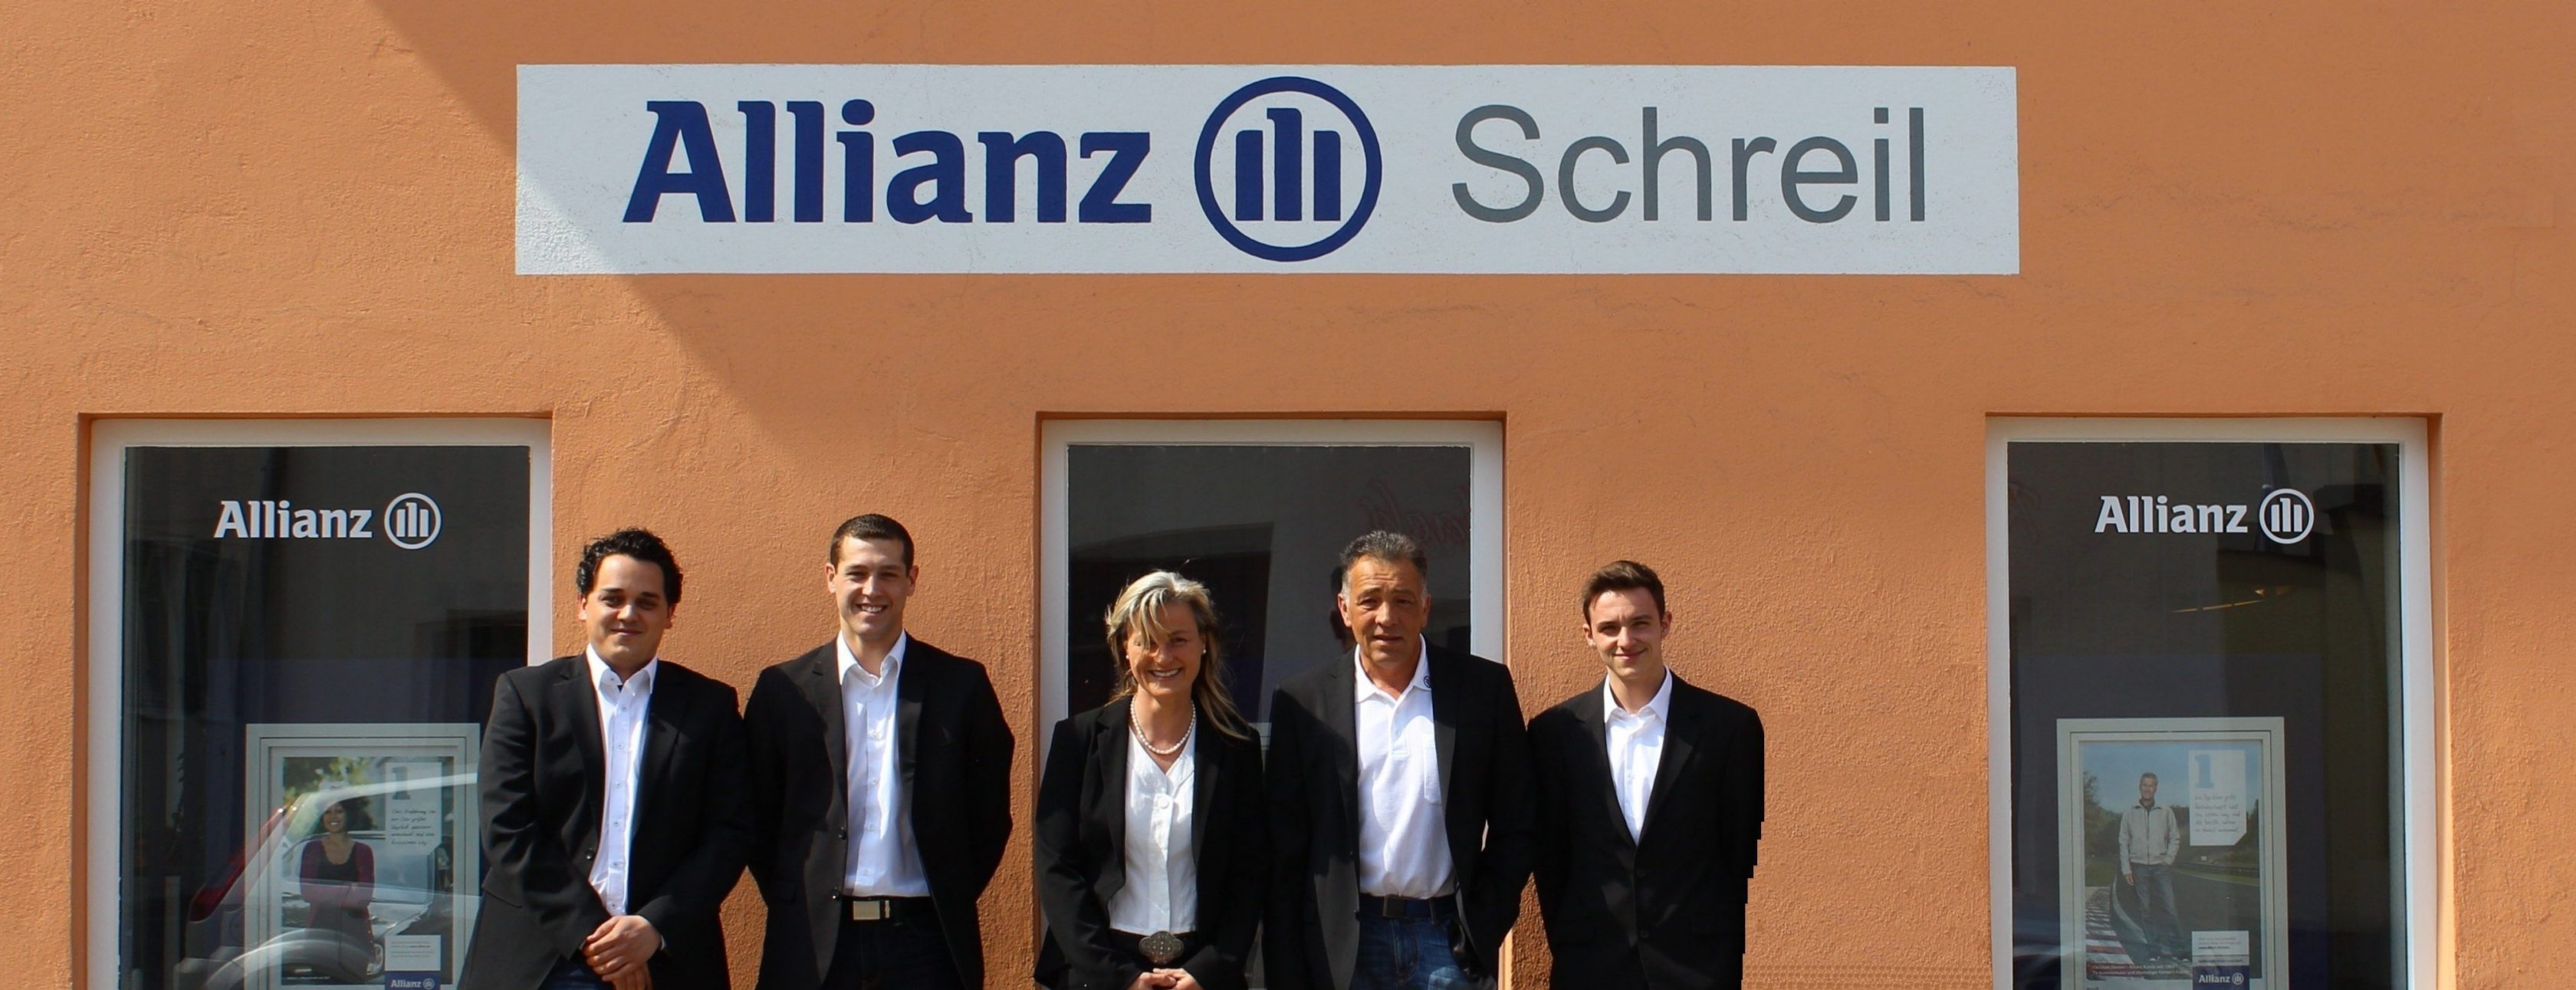 Allianz Versicherung Hermann Schreil Nördlingen - Titelbild